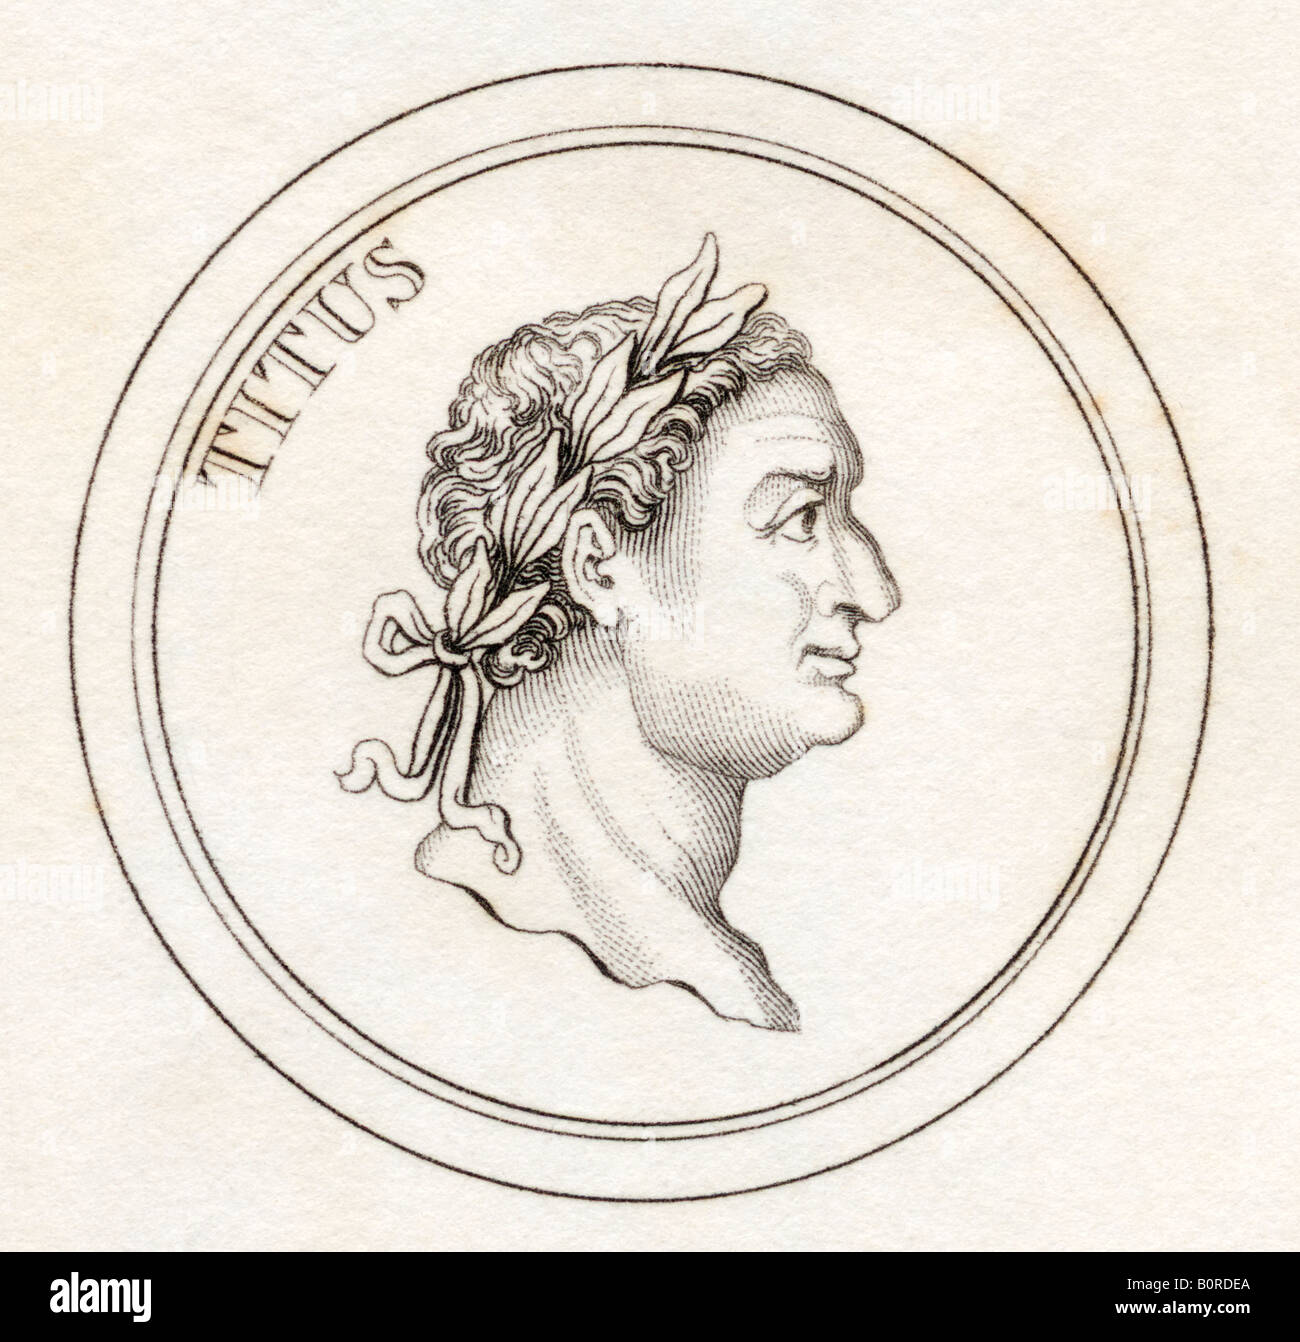 Titus Flavius Sabinus Vespasianus, alias Titus, AD39 - 81. Empereur romain. Tiré du livre Crabbs Historical Dictionary, publié en 1825. Banque D'Images